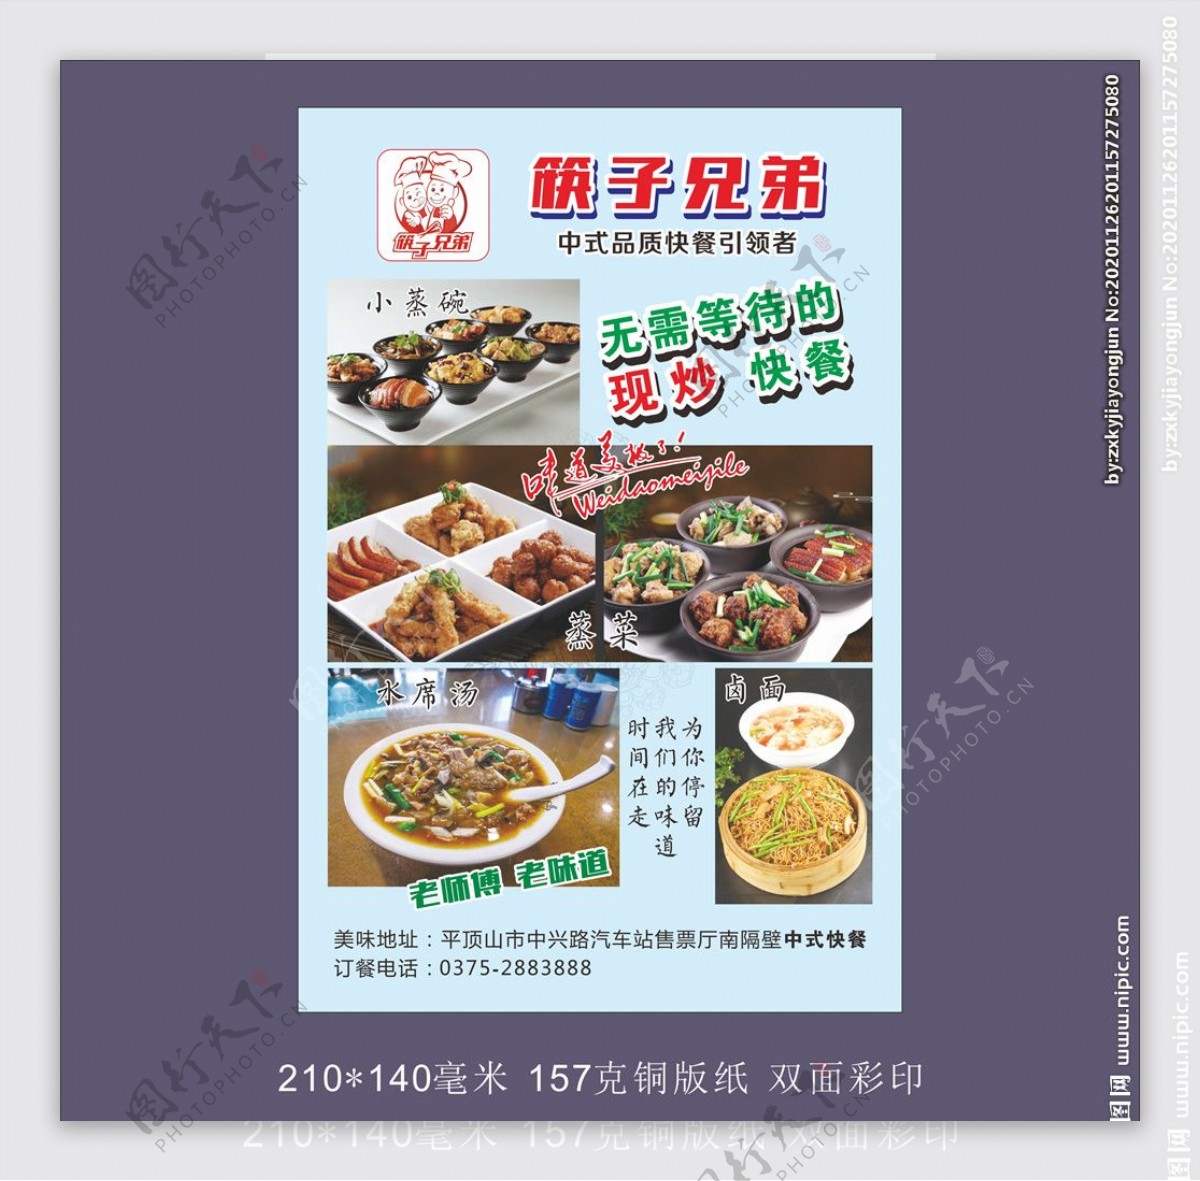 筷子兄弟中式快餐彩页图片